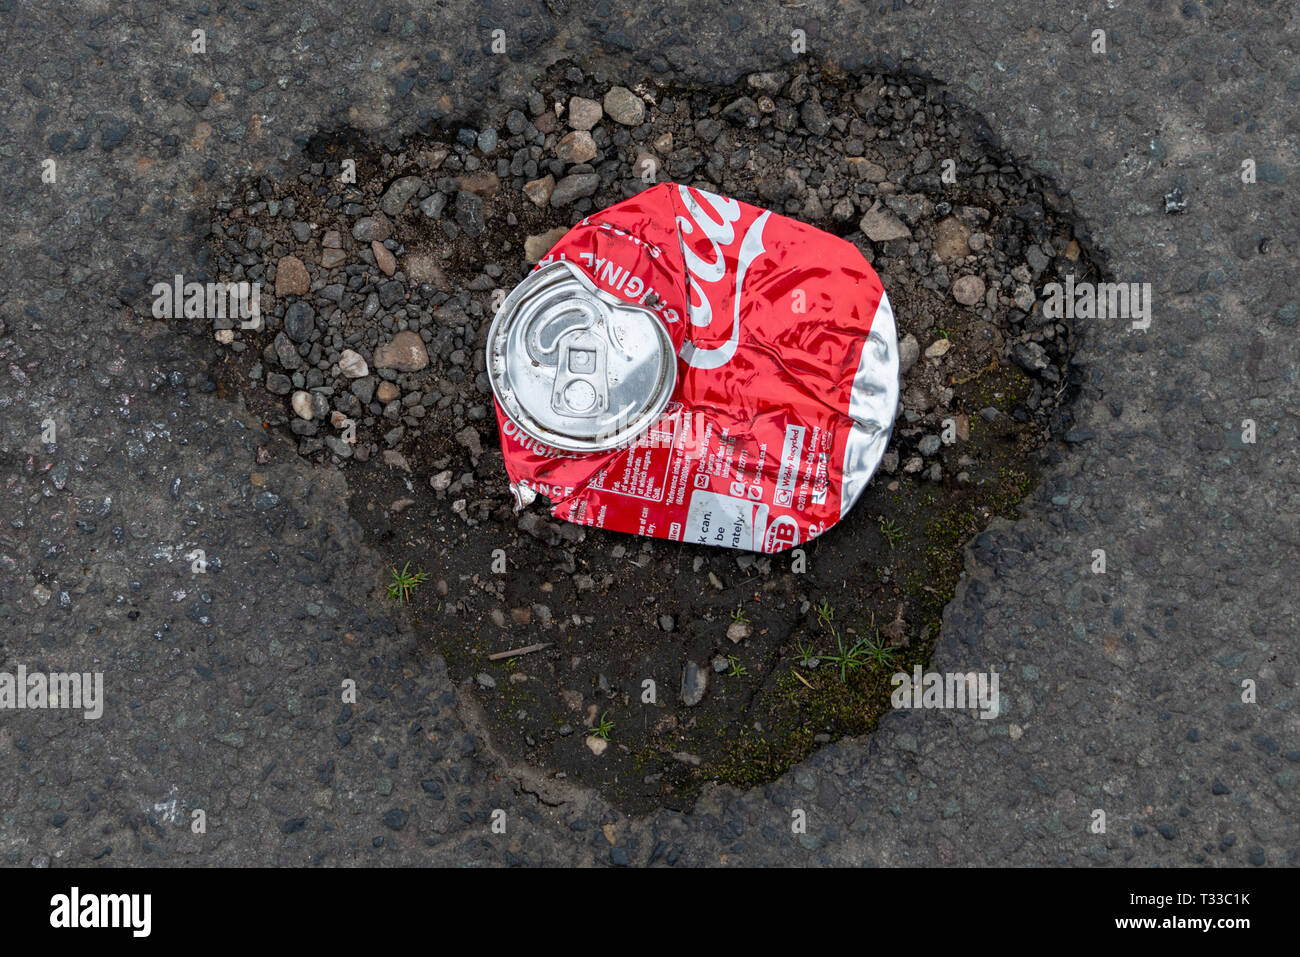 Stratford Upon Avon, Warwickshire, Angleterre Royaume-uni 23 mars 2019 coca cola écrasé peut-poule et illustrant les dommages causés à la planète par grand corp Banque D'Images